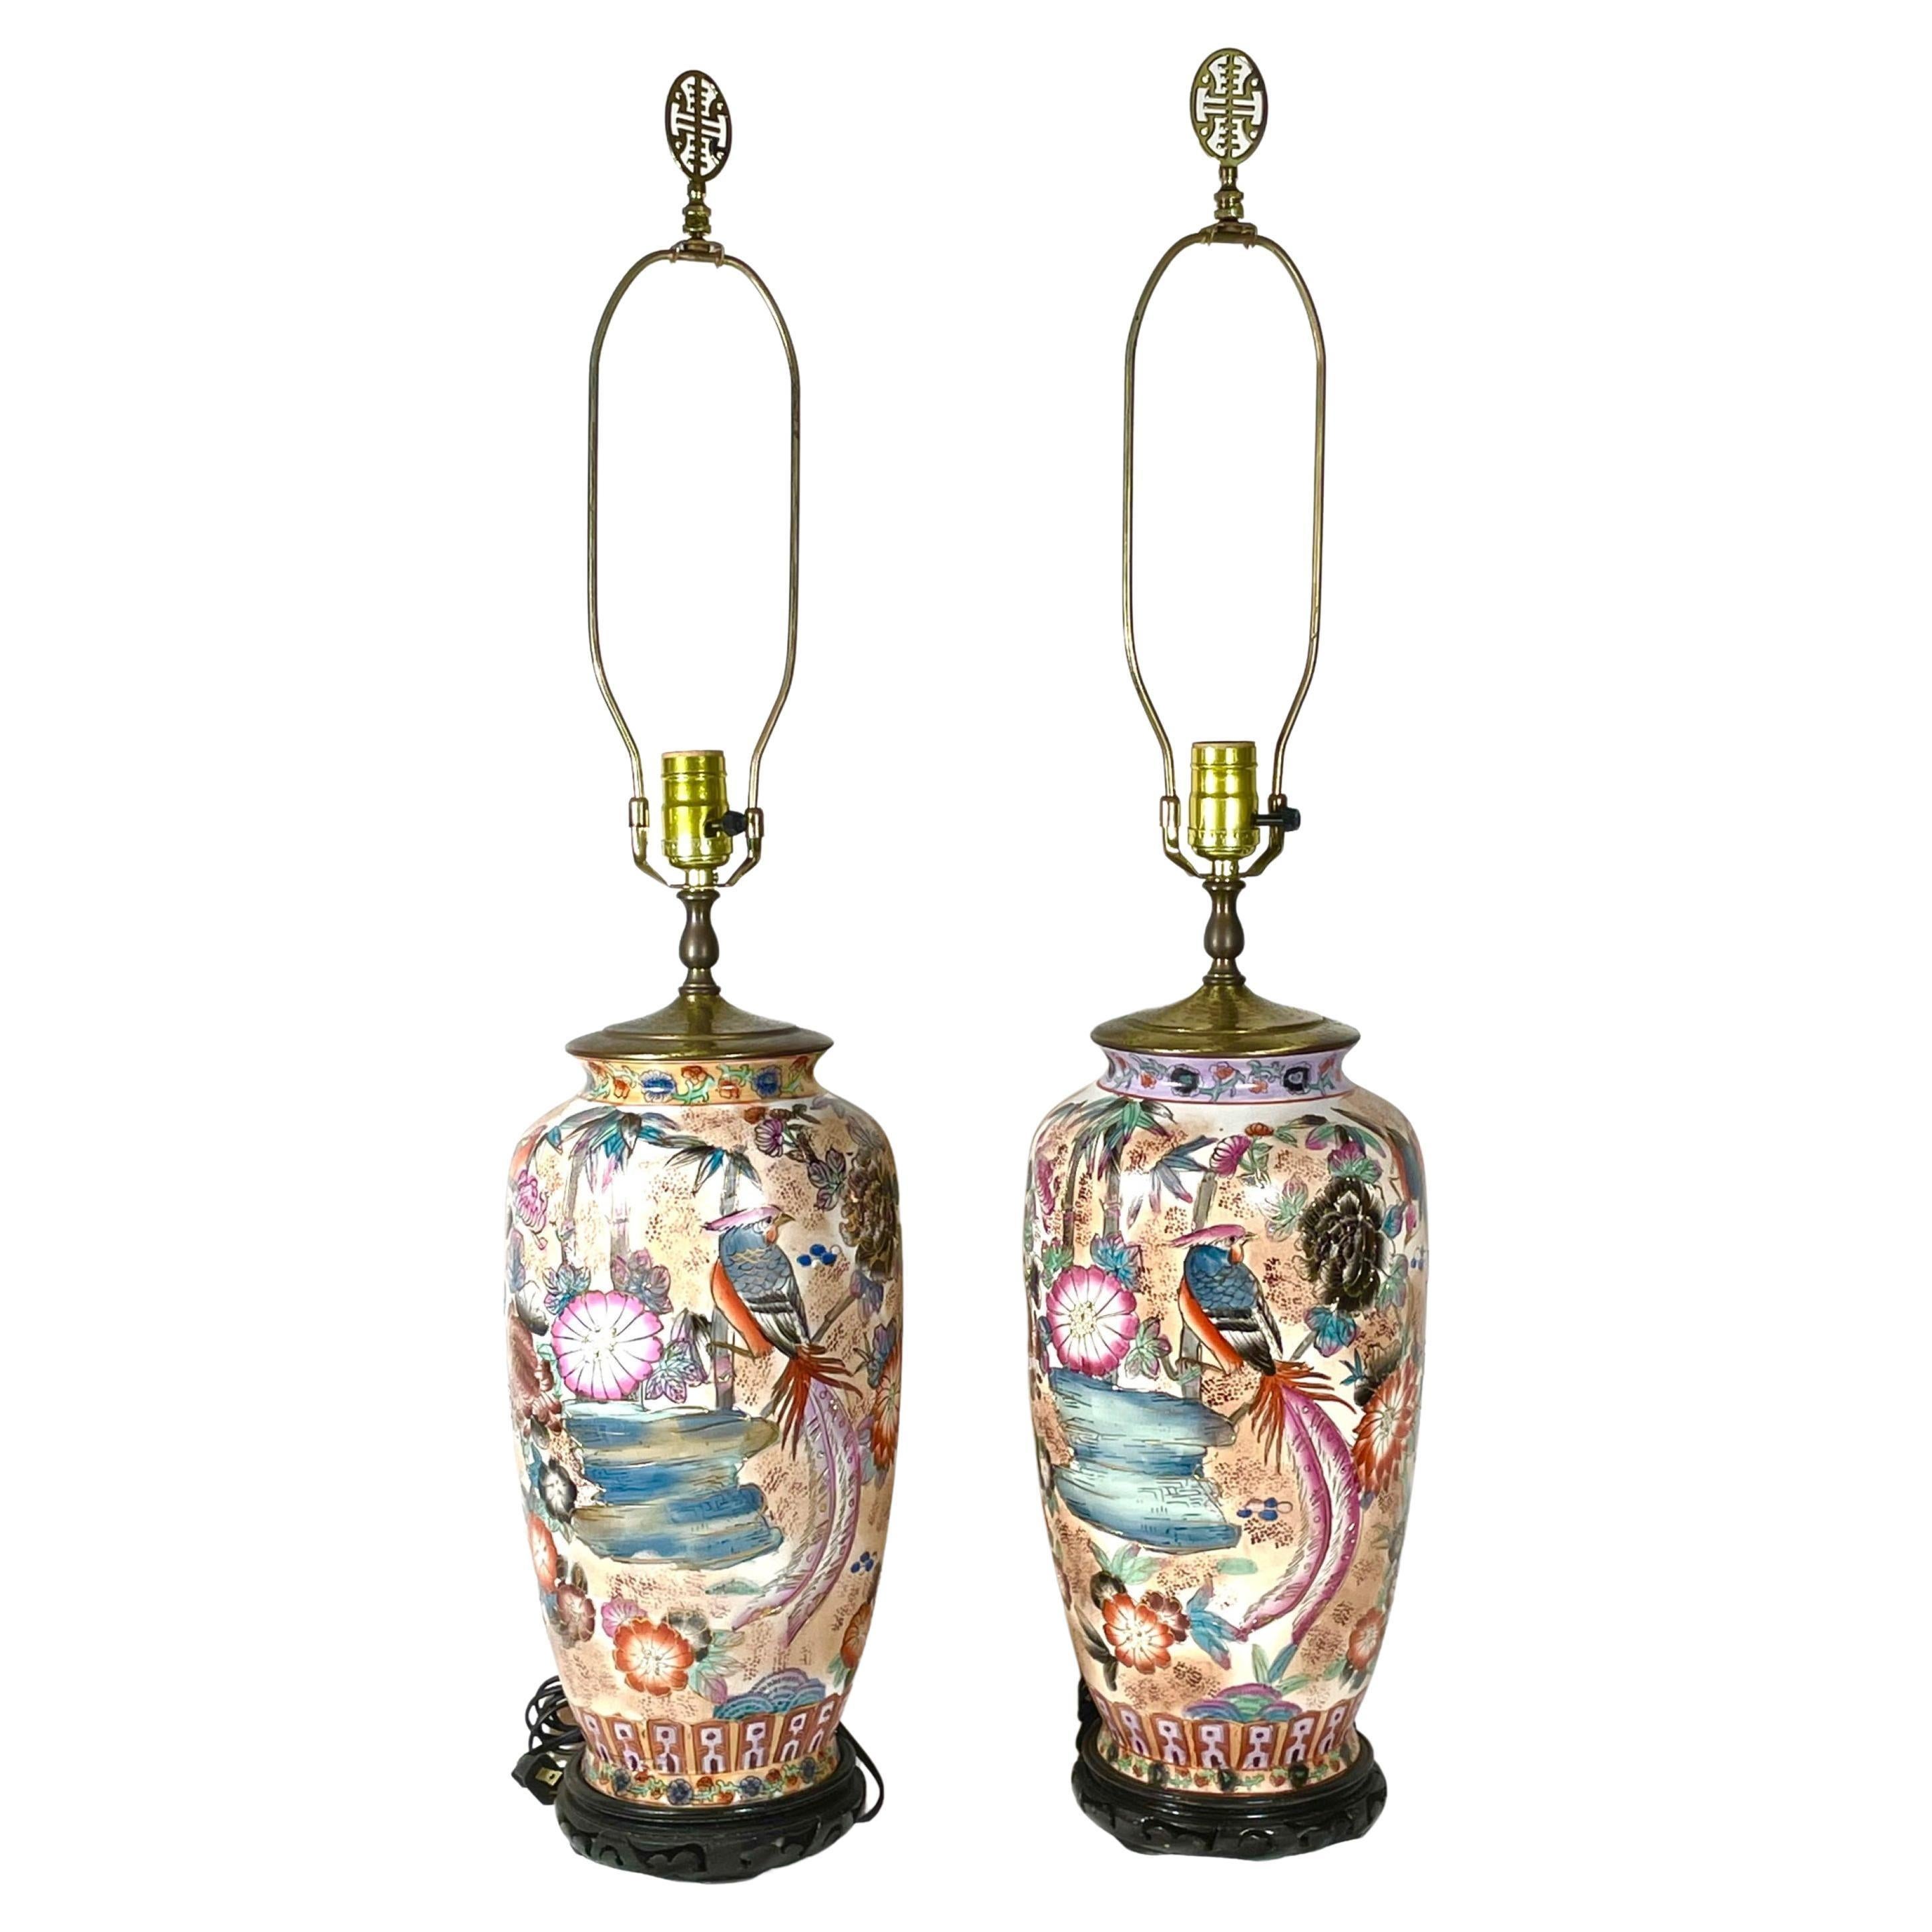 Paire de lampes chinoises en porcelaine peinte à la main et décorées de motifs de phéonix.

Deux grands et lourds vases chinois polychromes à décor de bon augure de phénix encerclant des pivoines parmi de l'eau et des branches sur un fond blanc.